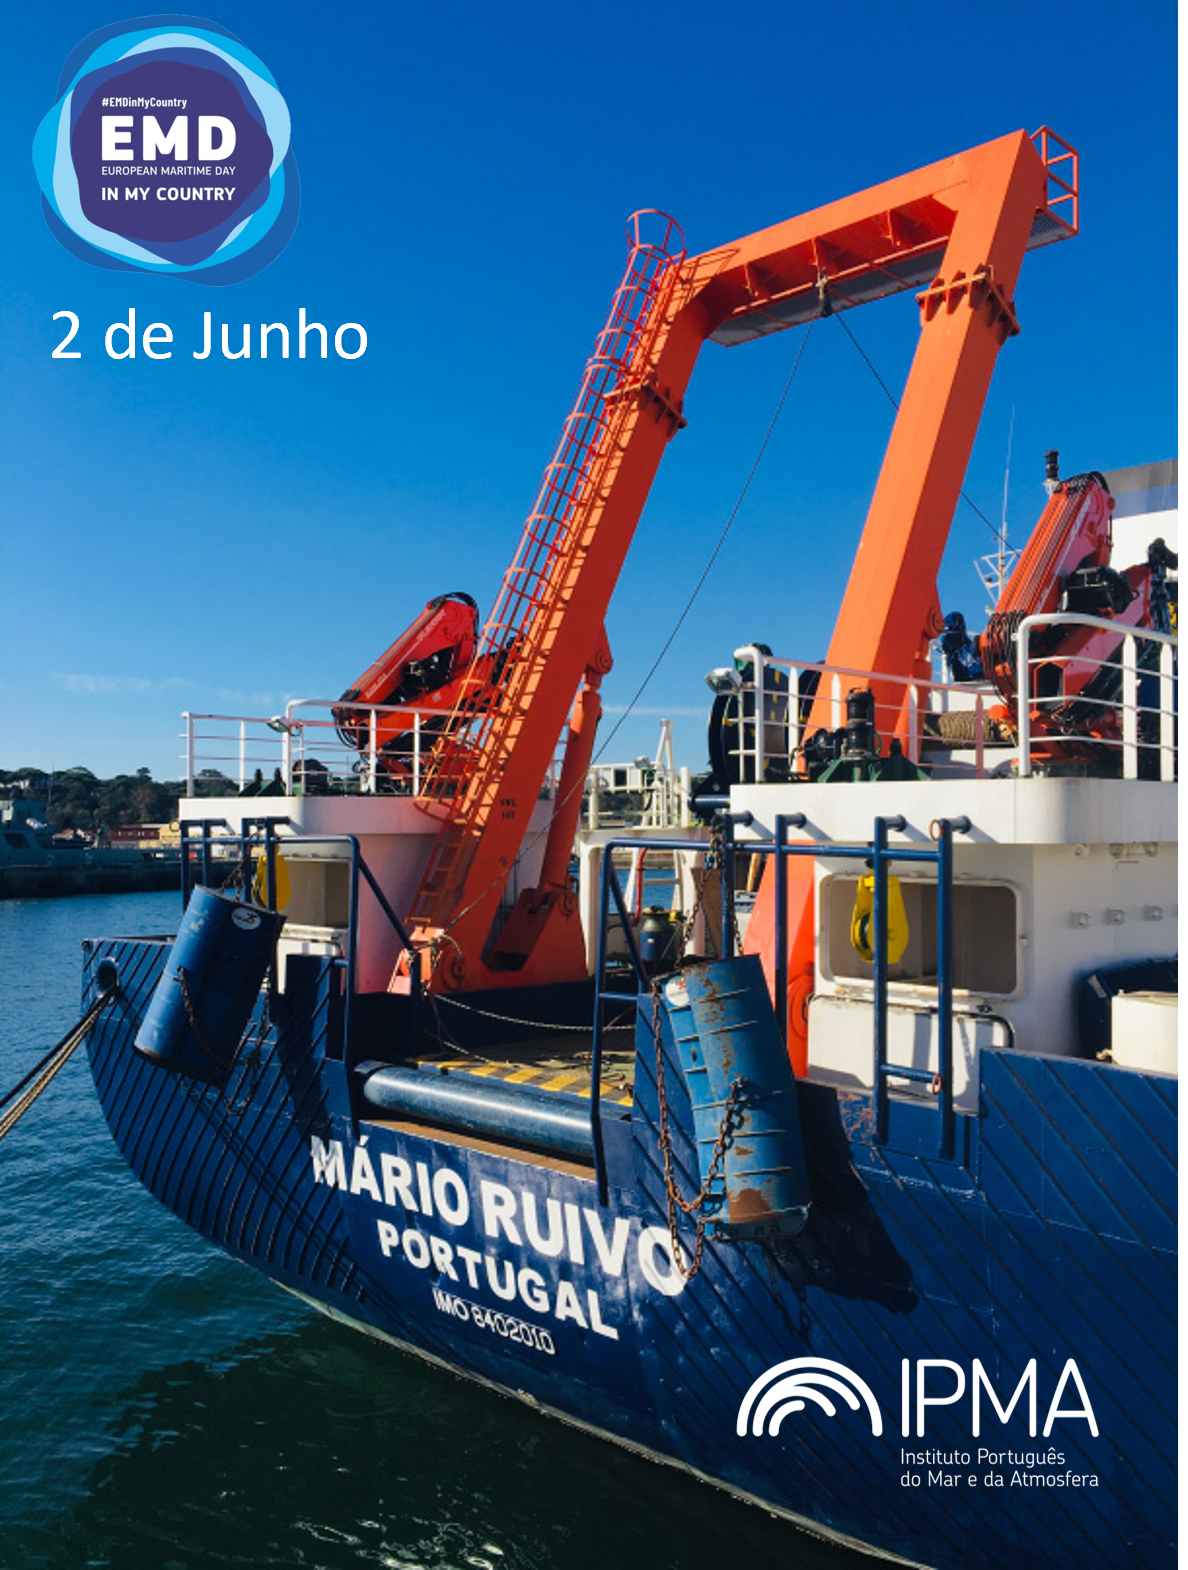 Navio de Investigação do IPMA, Mário Ruivo, recebe visitantes no dia 2 de junho!